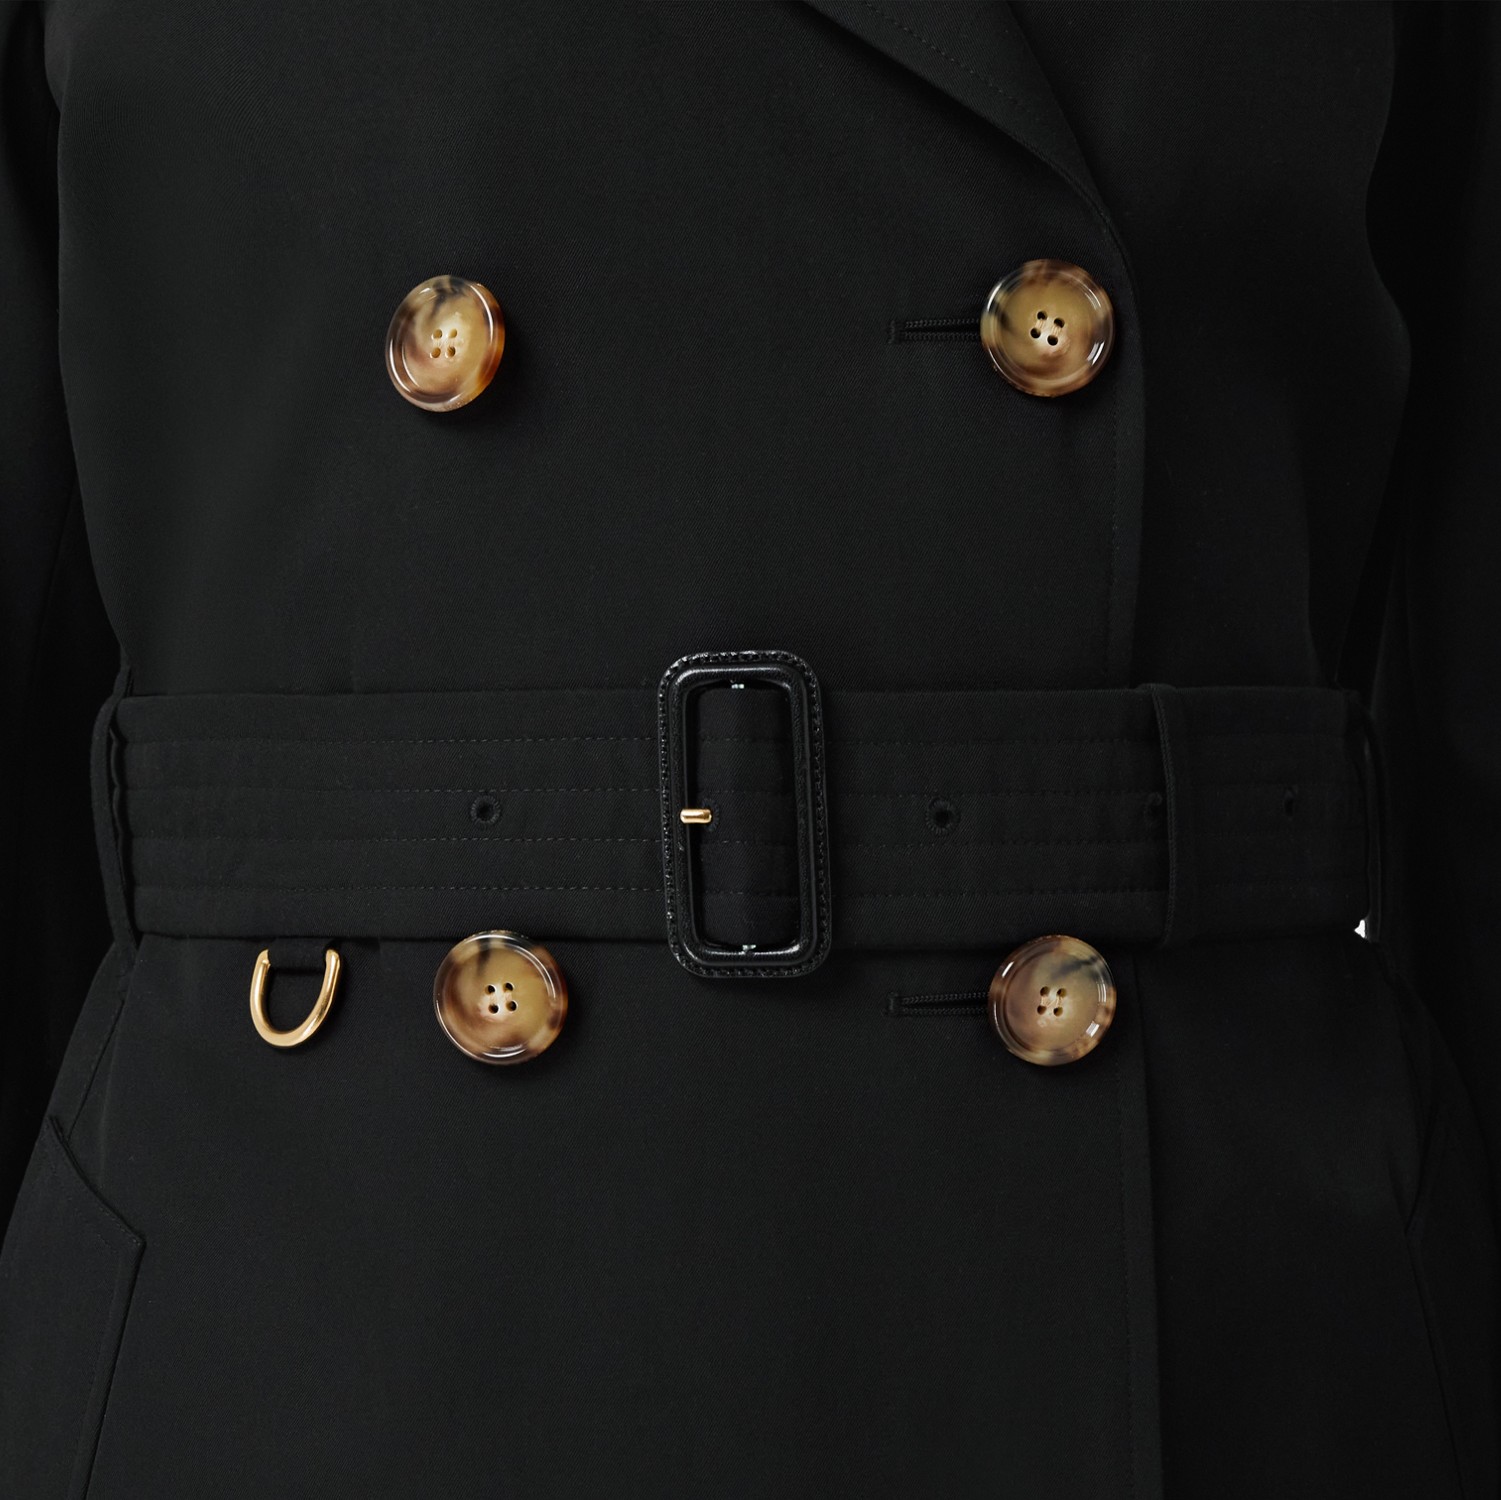 伊斯灵顿版型短款 Trench 风衣 (黑色) - 女士 | Burberry® 博柏利官网